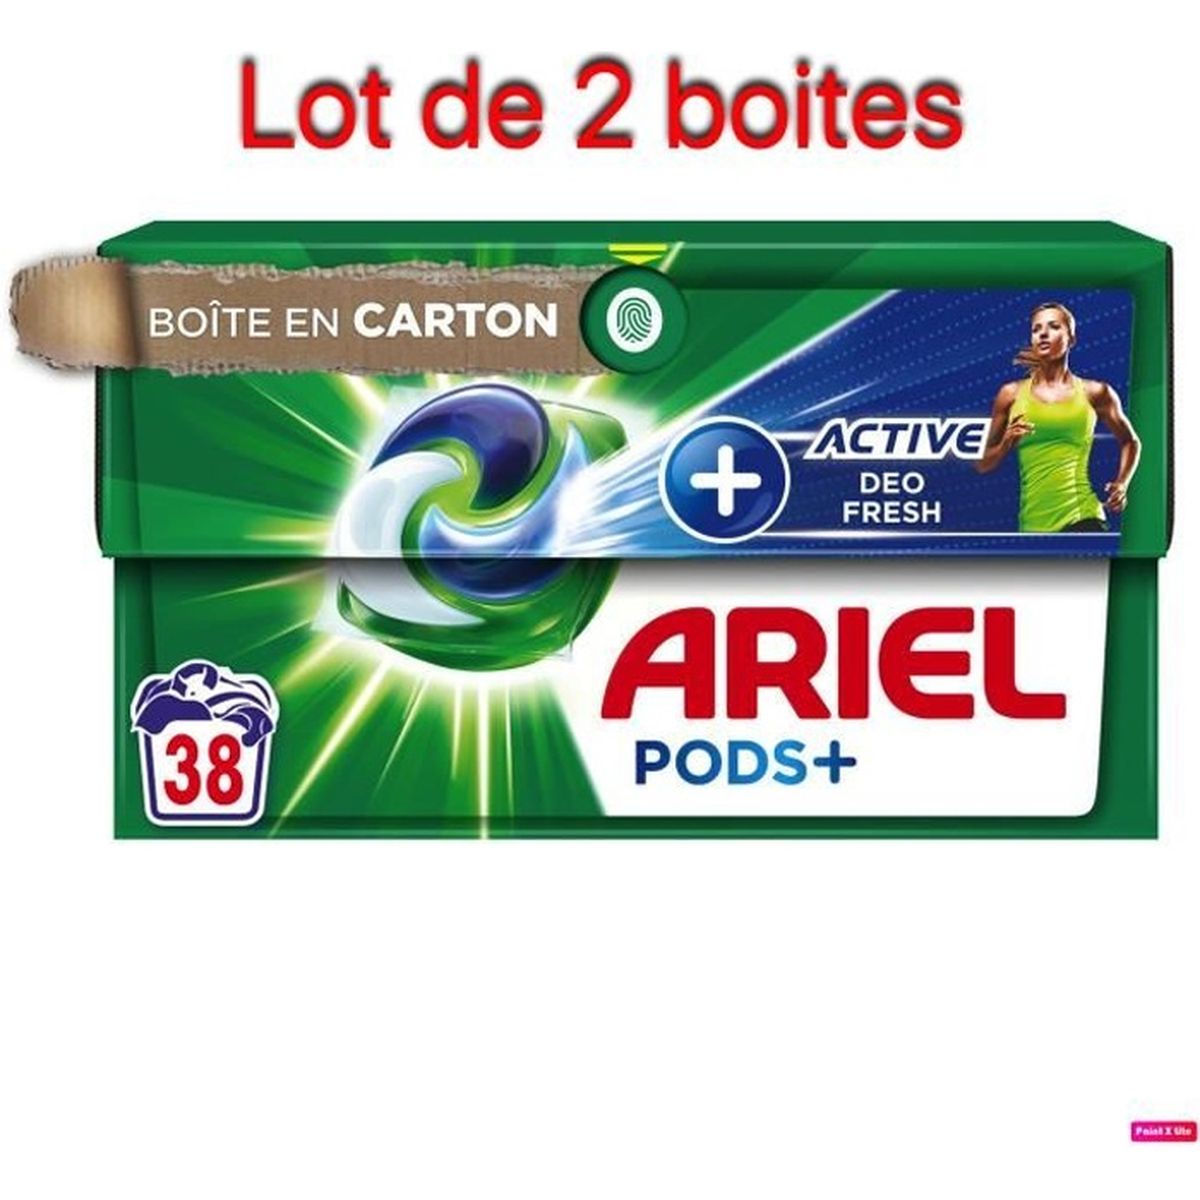 Promo: Lot Unilever Omo Lessive Liquide (Valeur 22500 Eur) - France,  Produits Neufs - Plate-forme de vente en gros